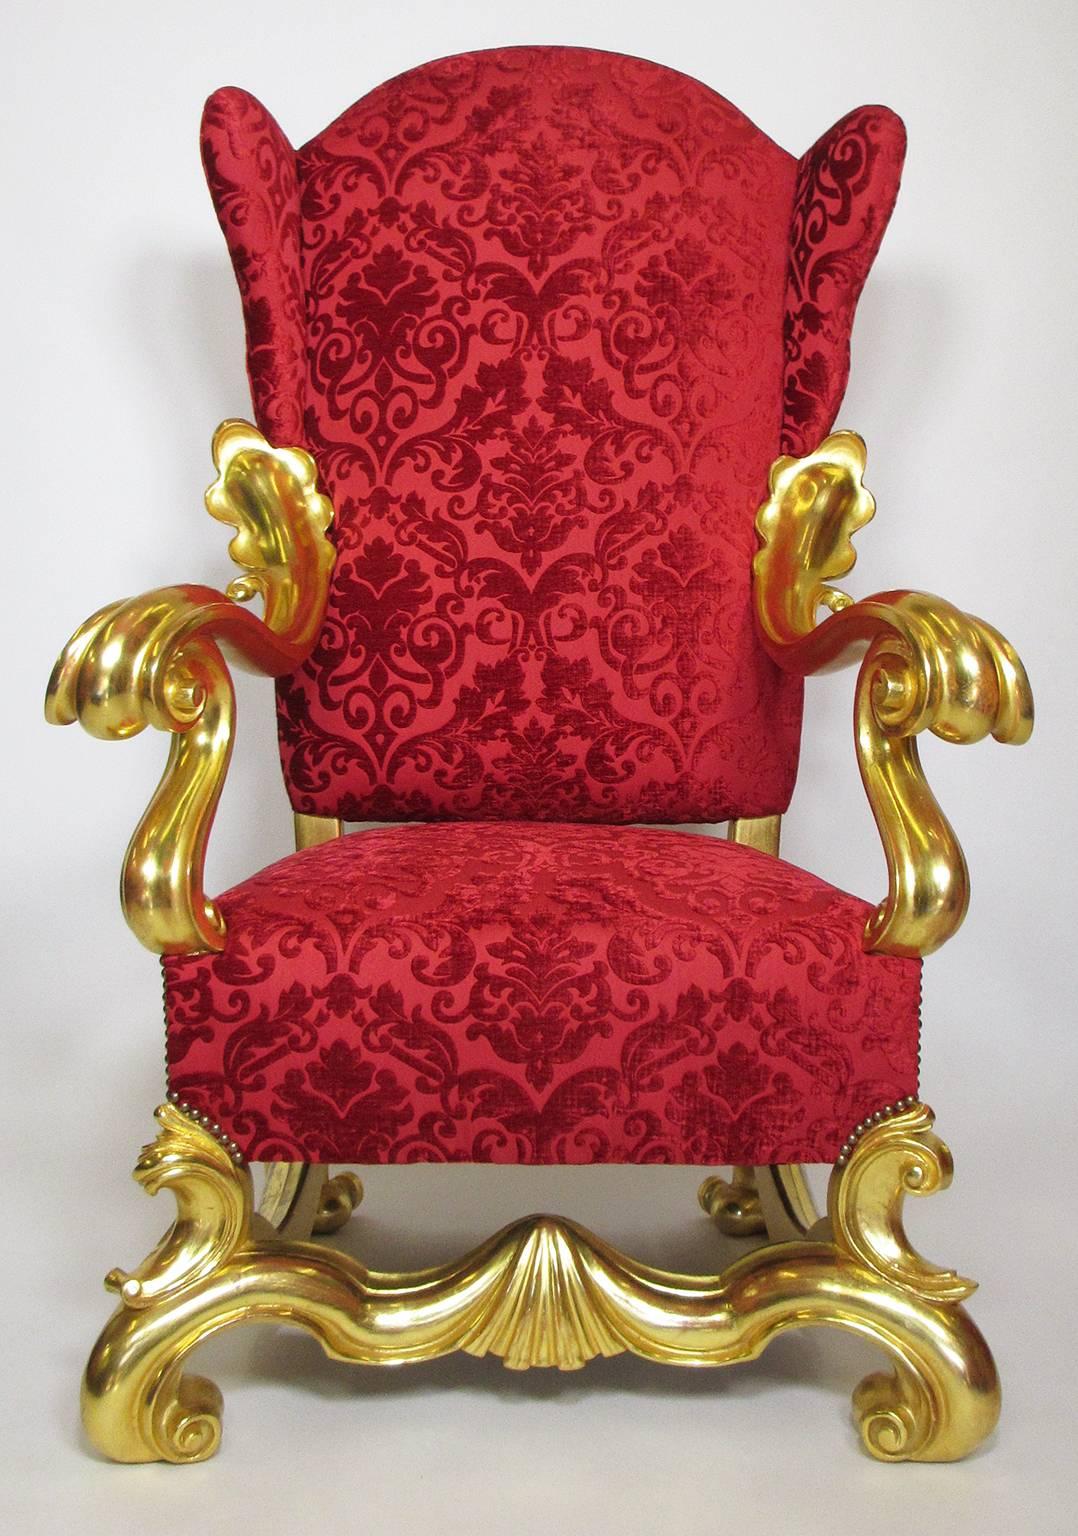 Paire de fauteuils à trône ailé italiens du 19e-20e siècle de style baroque en bois doré sculpté, chaque trône étant finement sculpté avec des volutes et des accoudoirs ondulés, sur des pieds cabriole sculptés. (Nouvelle tapisserie et toutes les